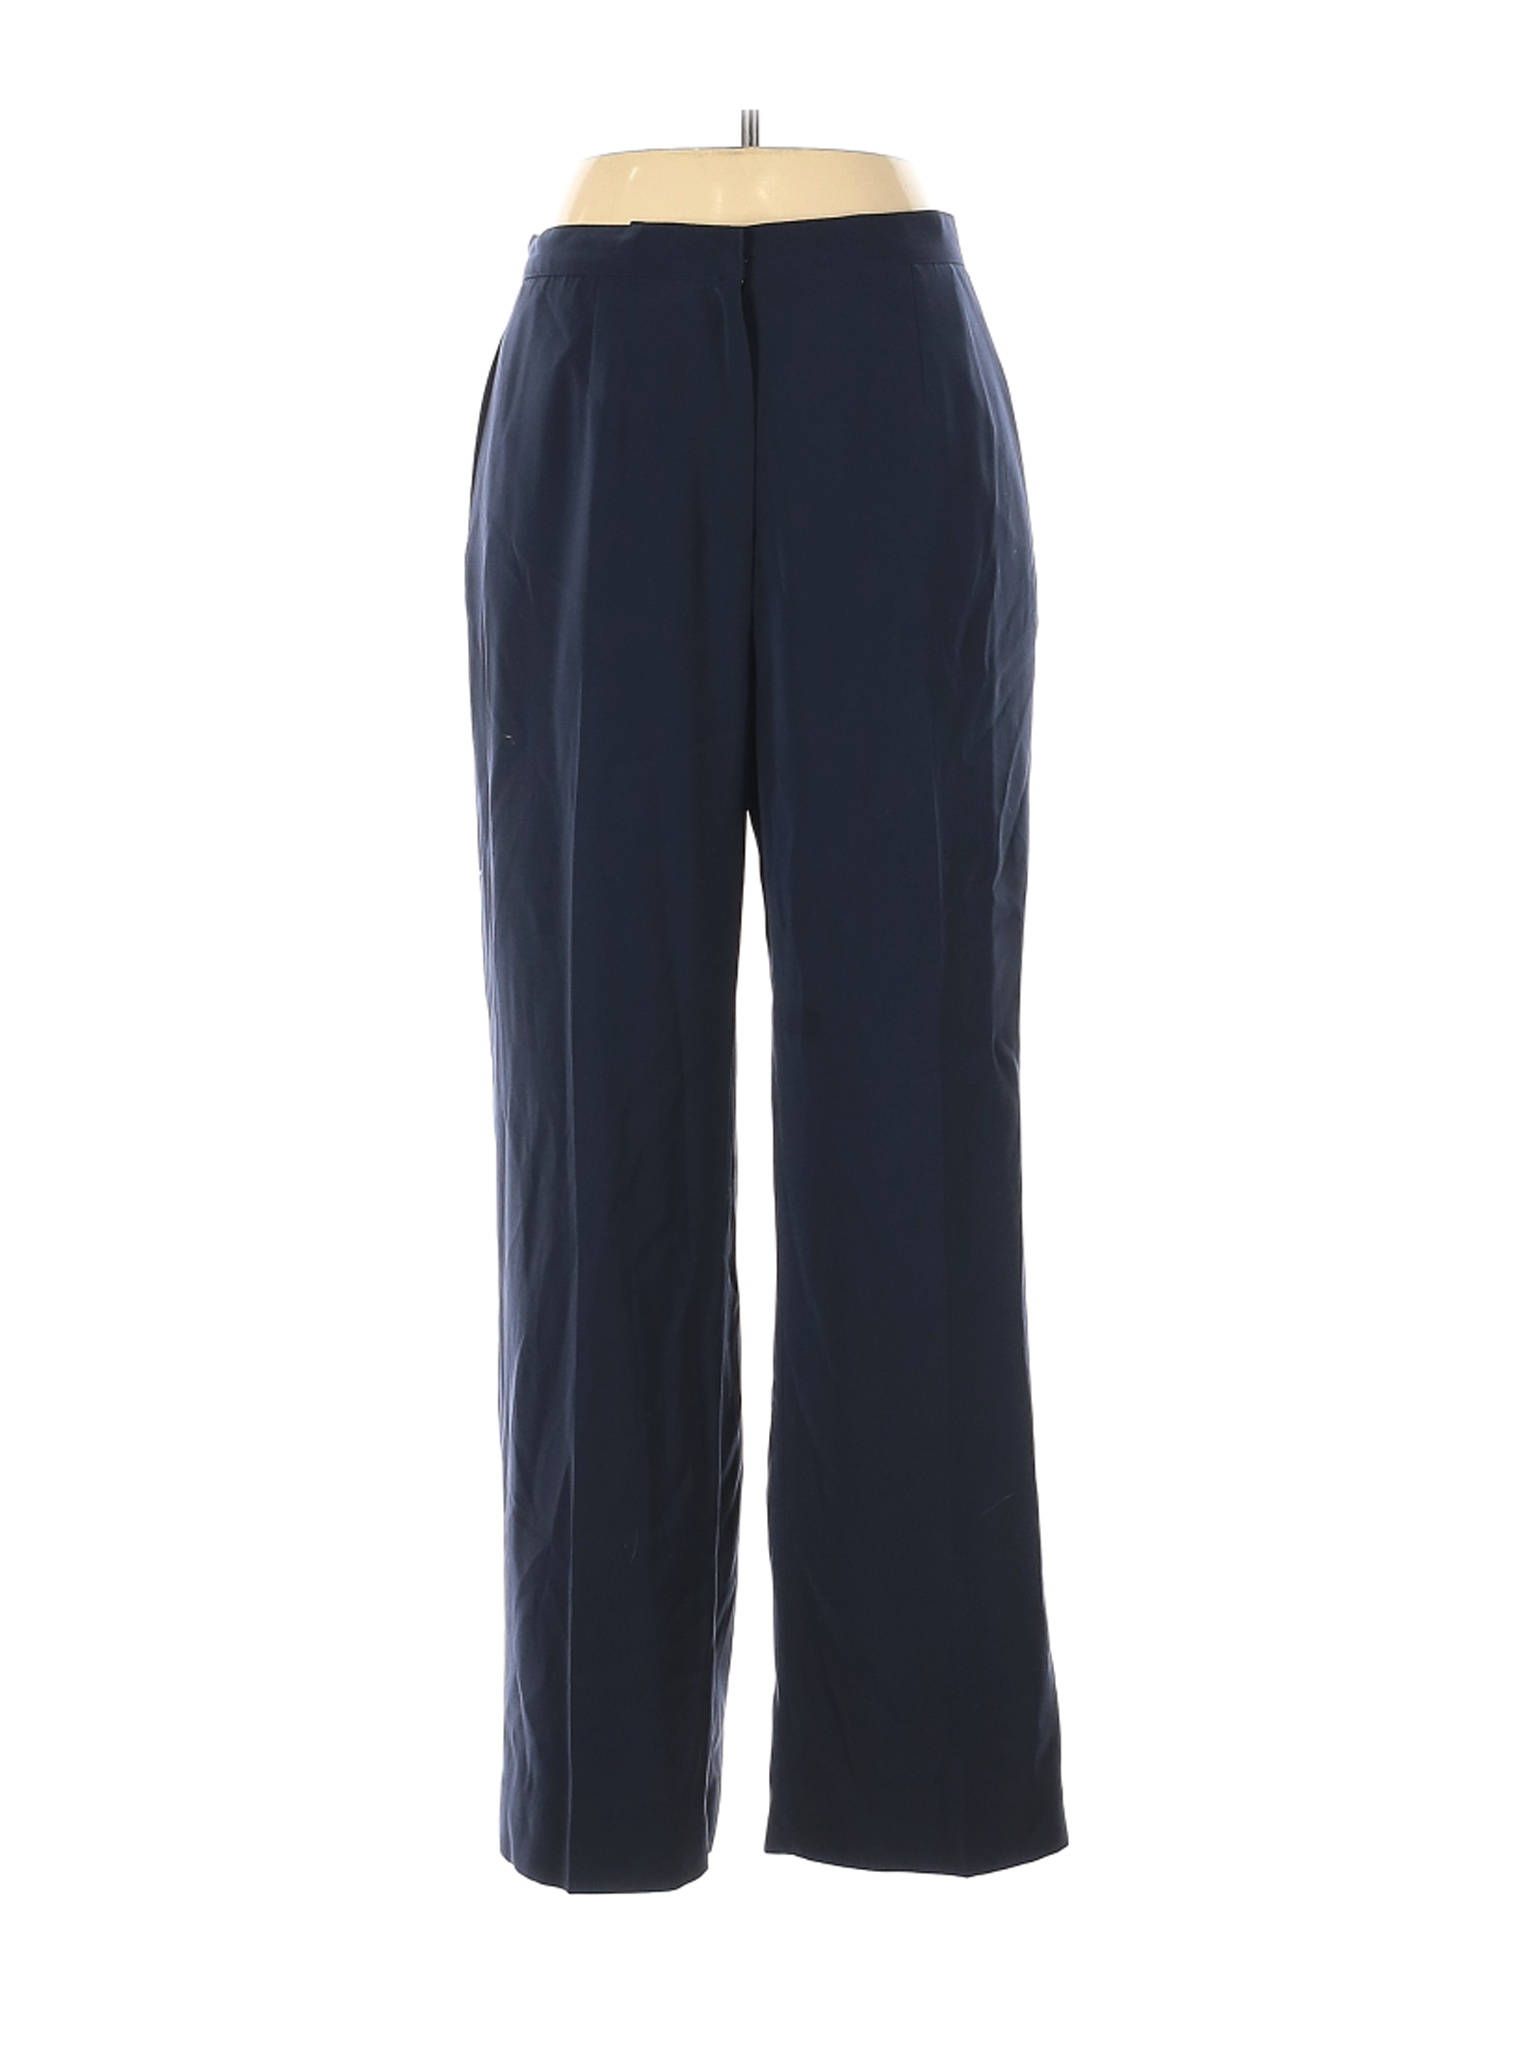 Kasper Women Blue Dress Pants 12 Petites | eBay